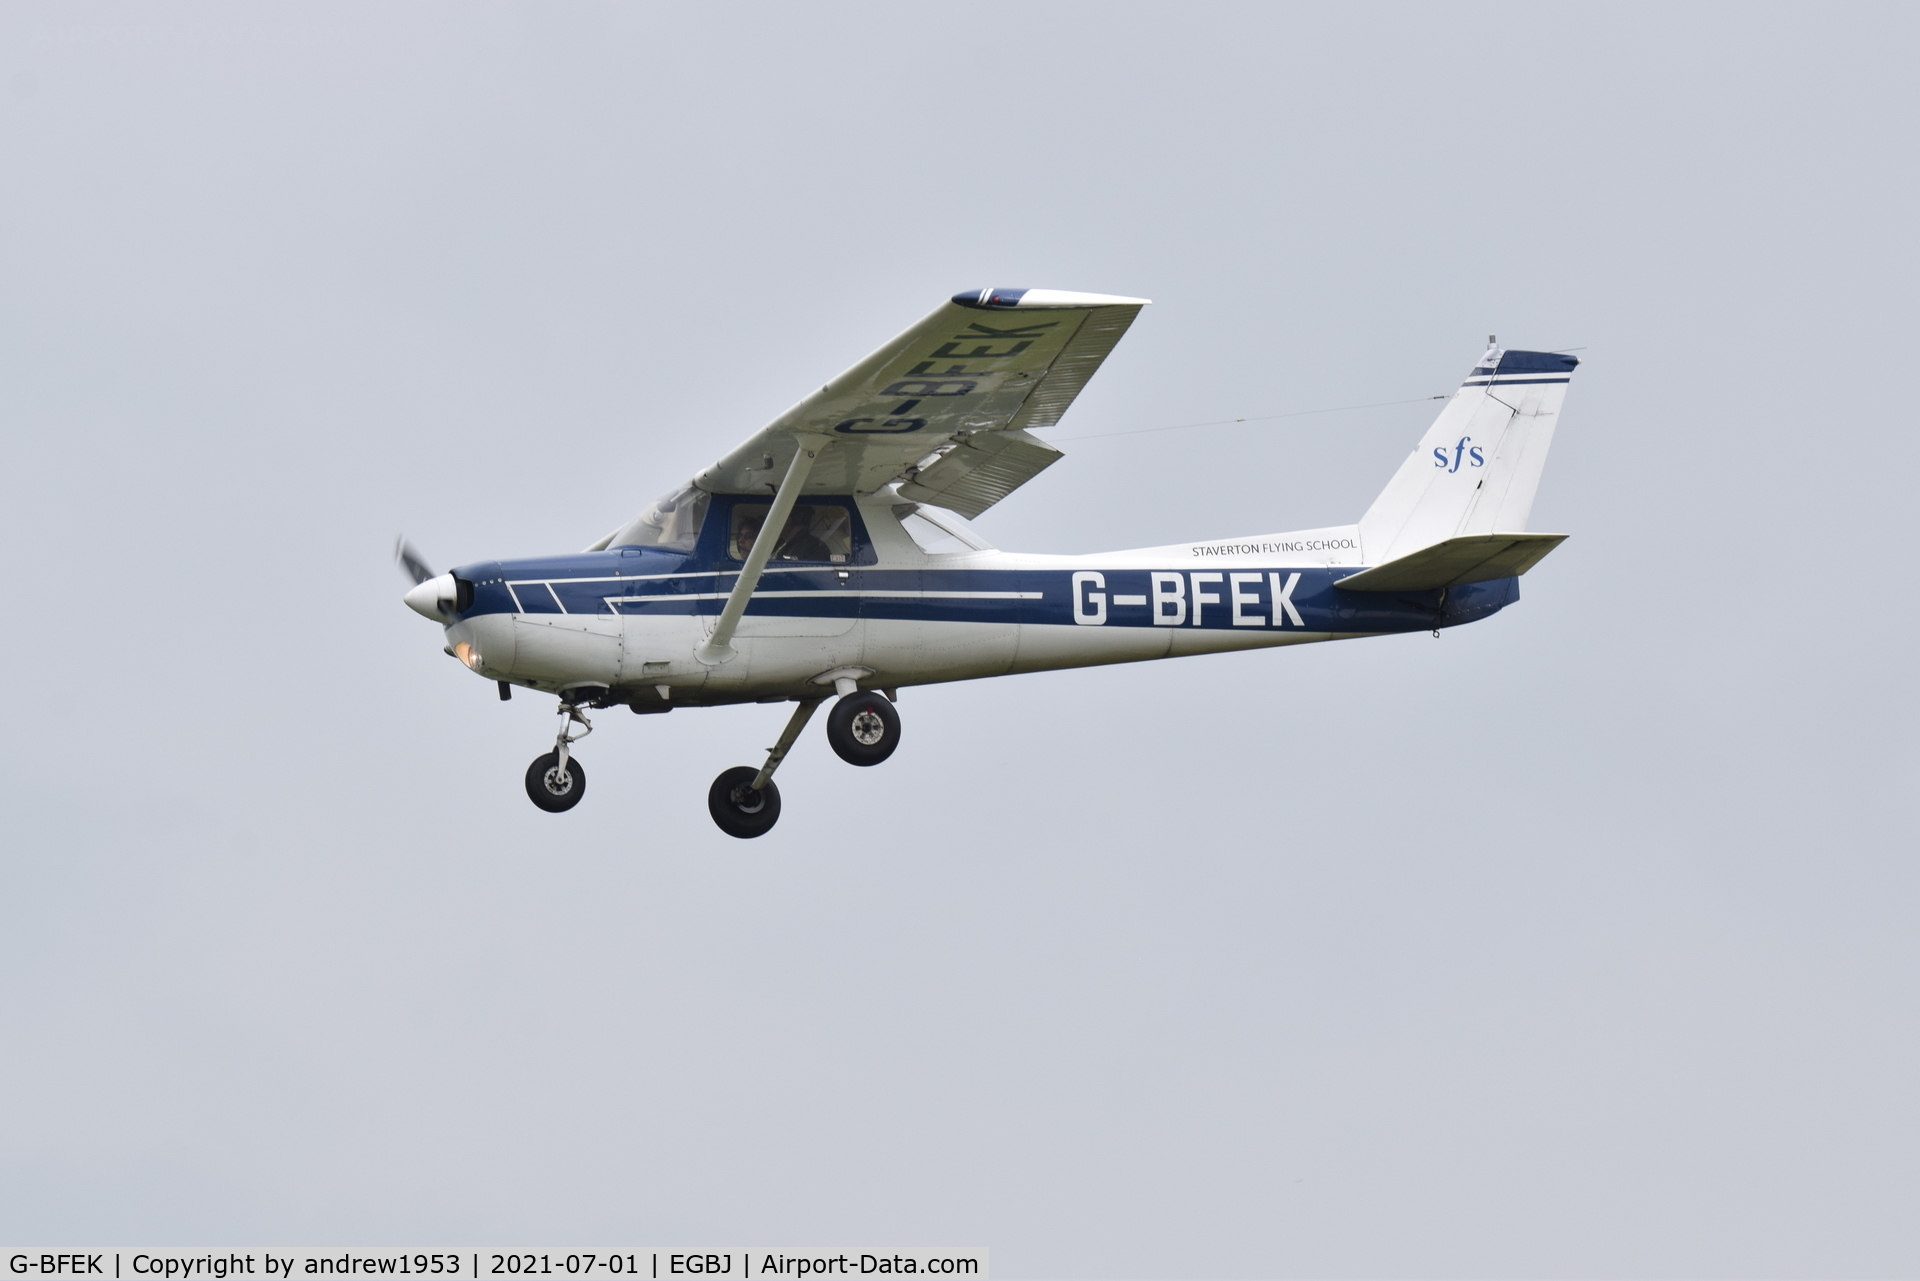 G-BFEK, 1977 Reims F152 C/N 1442, G-BFEK at Gloucestershire Airport.